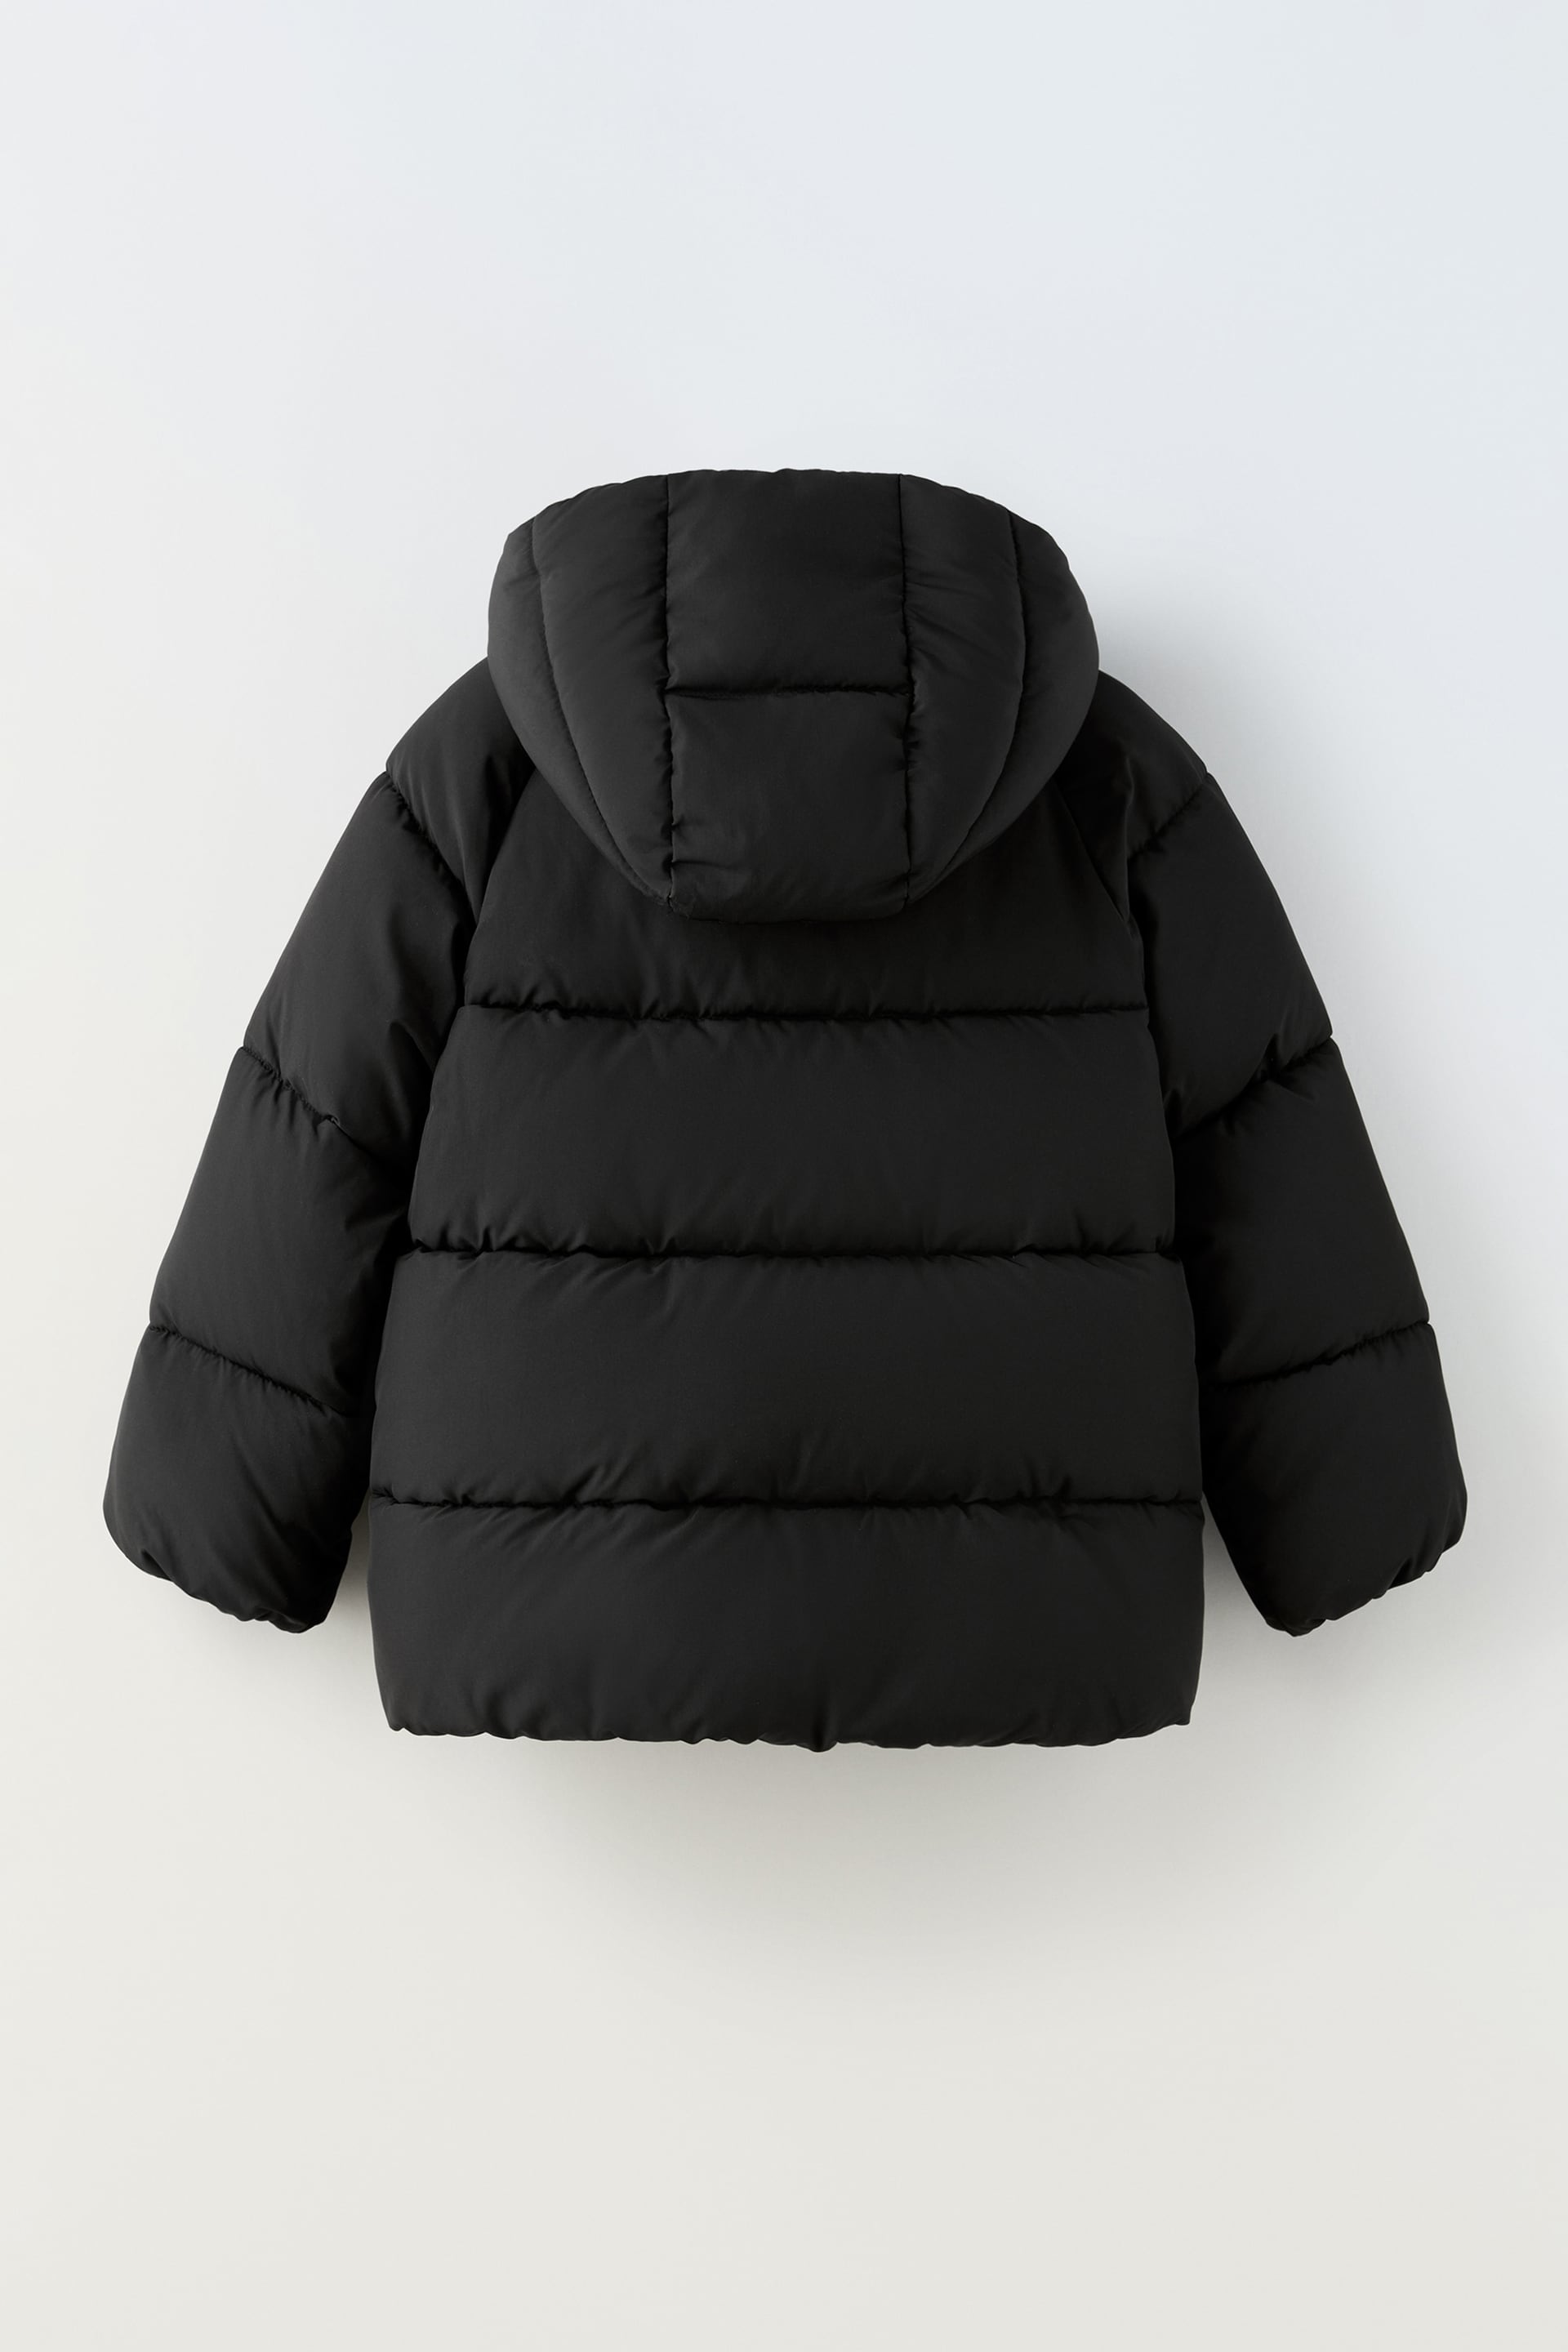 Zara Unisex Puffer Coat